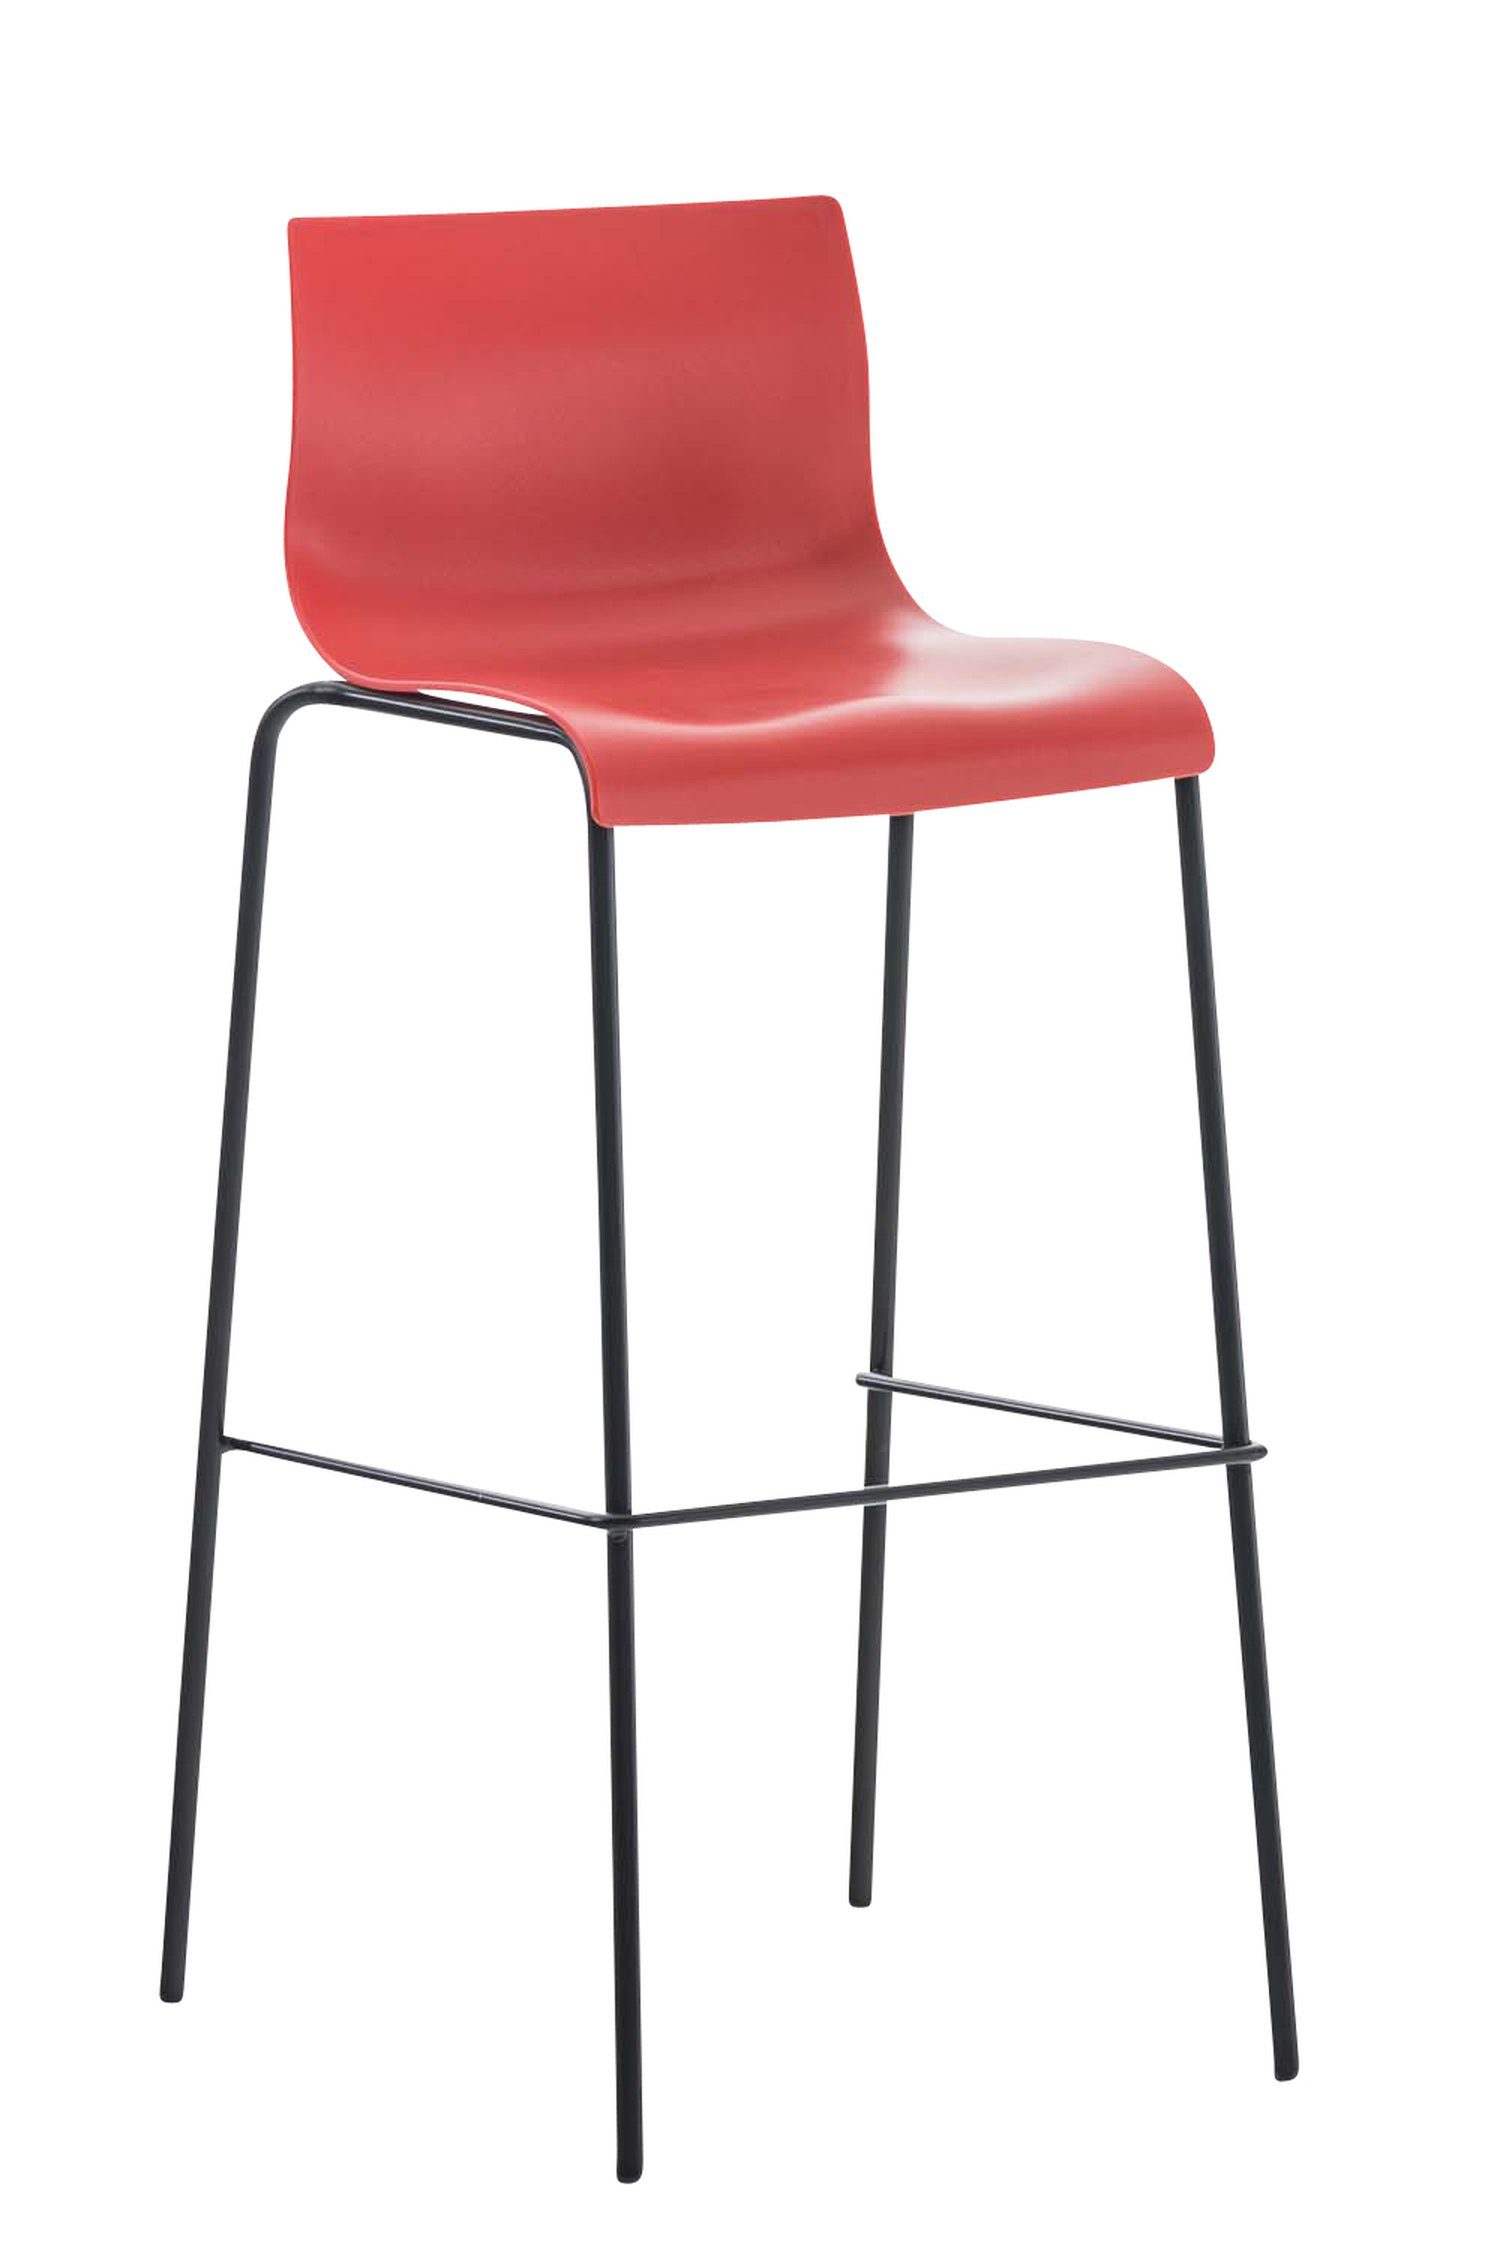 TPFLiving Barhocker Hoover (mit Fußstütze - Hocker für Theke & Küche - Tresenhocker), Gestell Metall schwarz - Sitzfläche: Kunststoff Rot